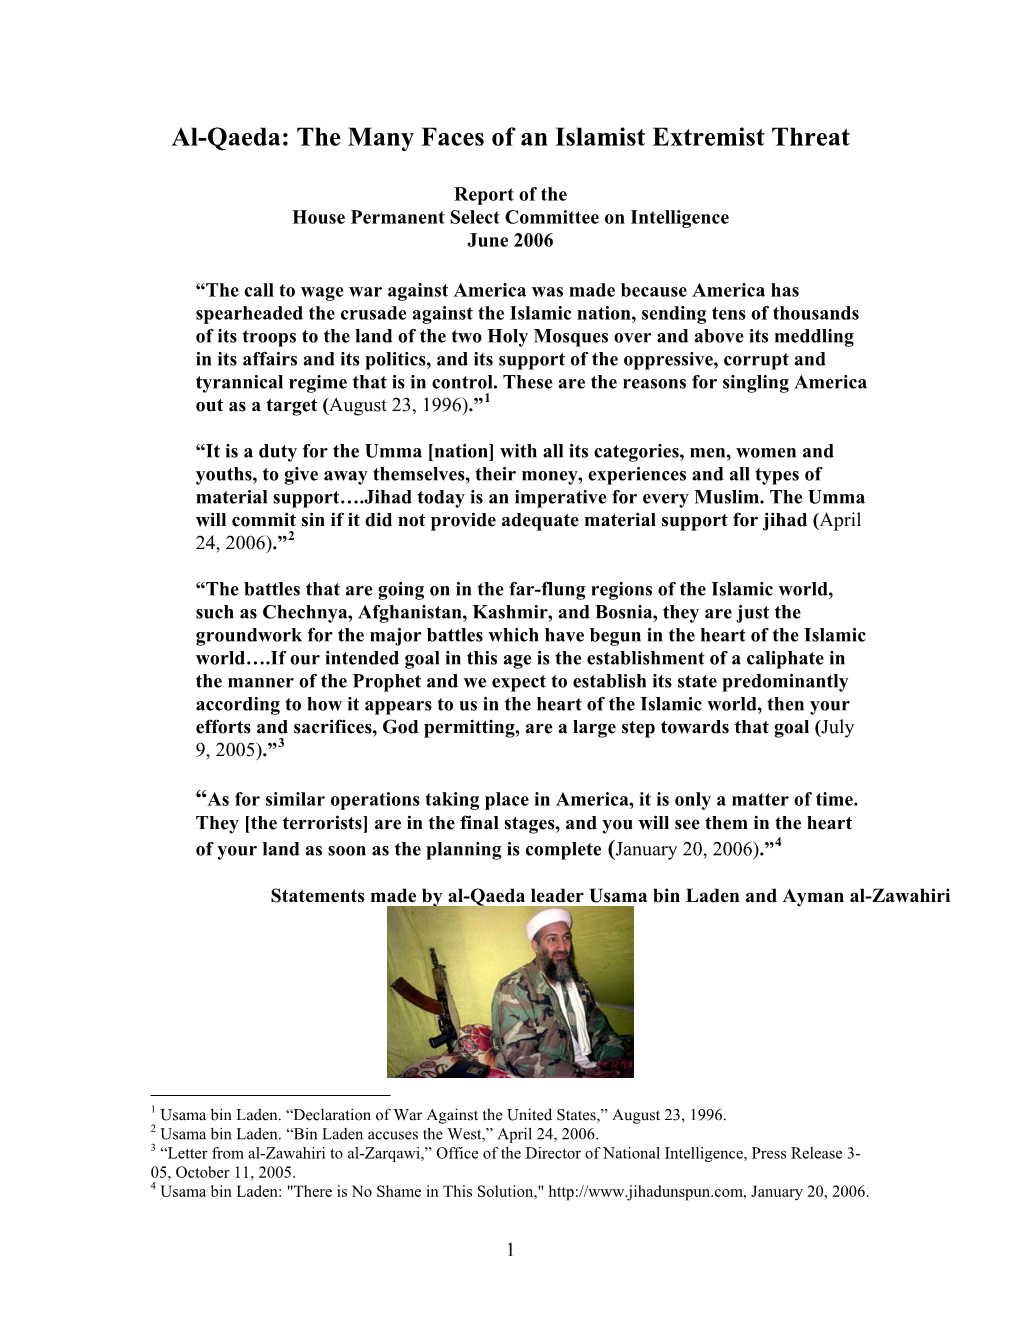 Al-Qaeda: the Many Faces of an Islamist Extremist Threat